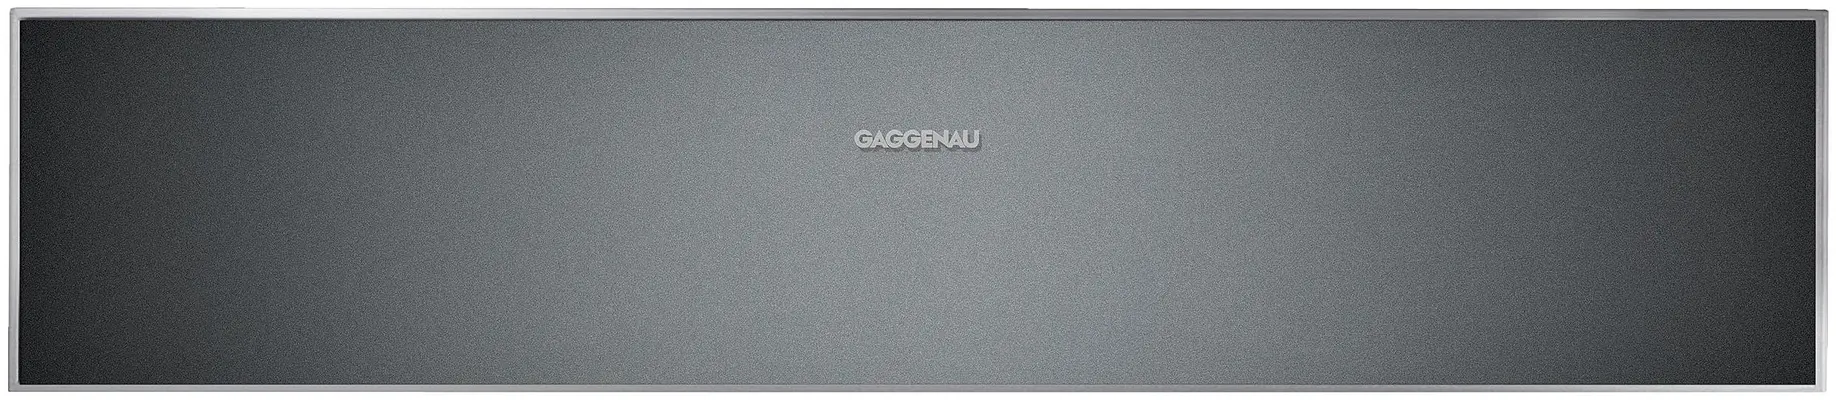 DV461100-Gaggenau-Vacu%C3%BCmsystemen